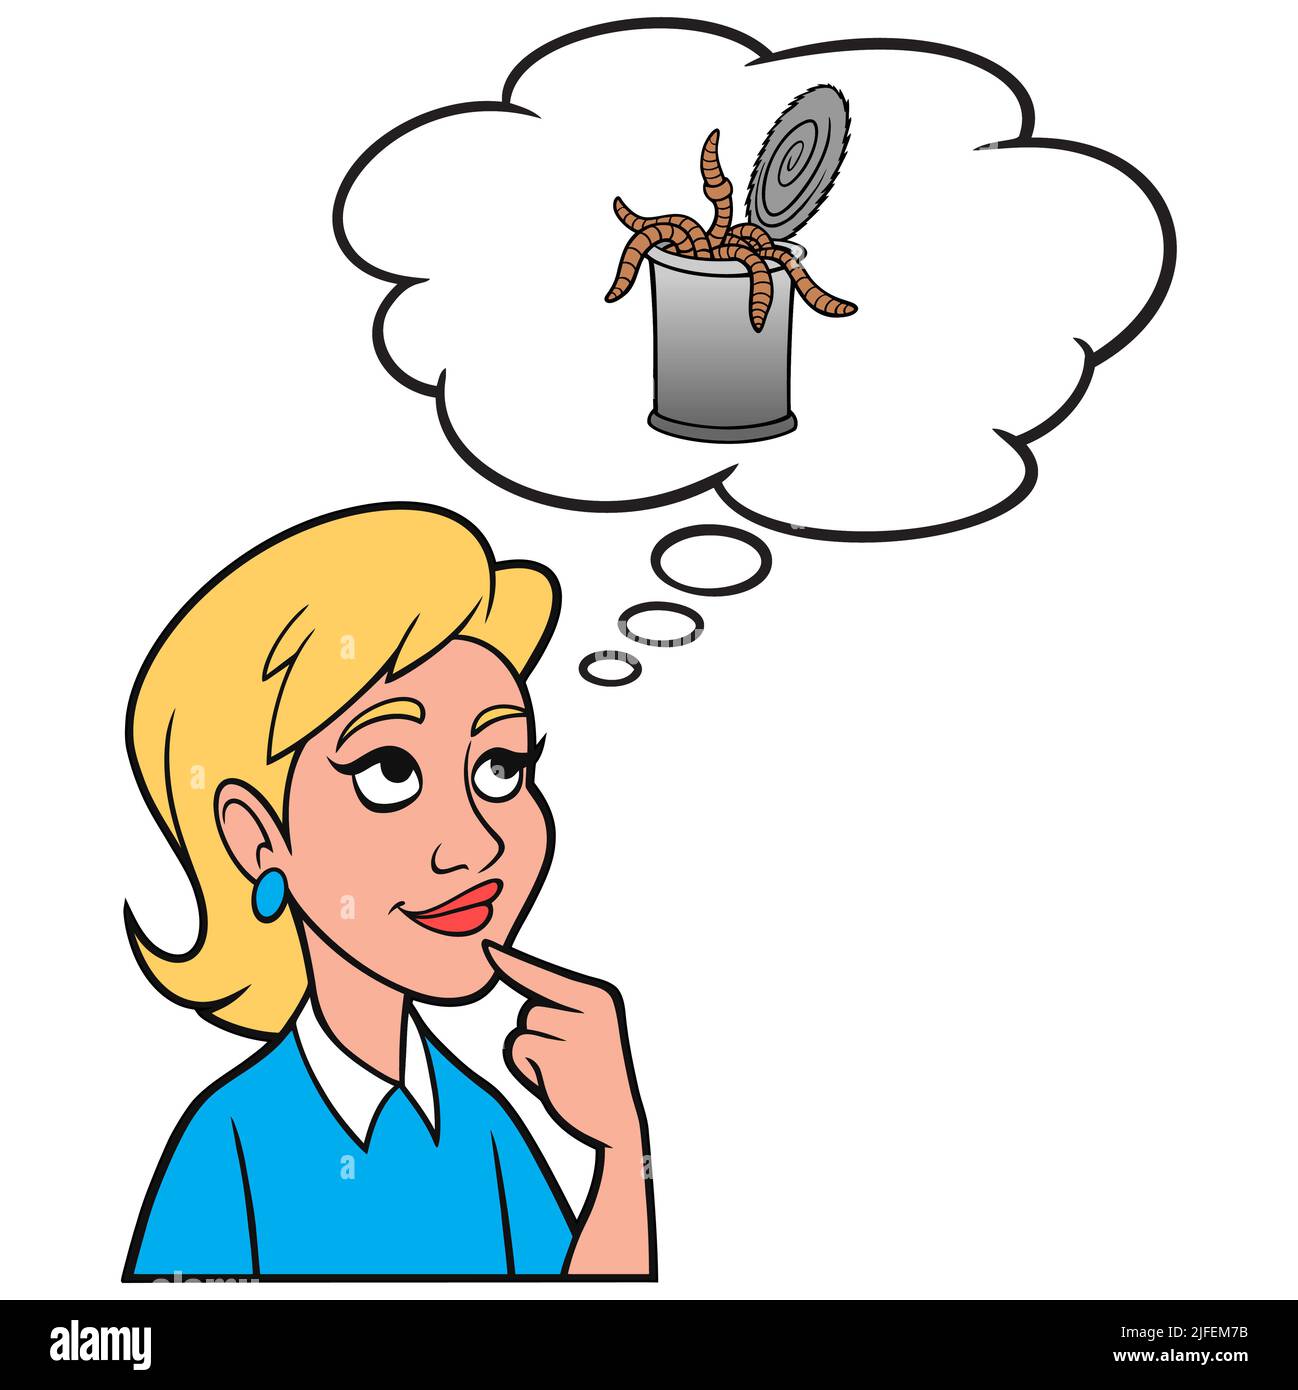 Mädchen, die an eine Dose Würmer denken - Eine Cartoon-Illustration eines Mädchens, das darüber nachdenkt, eine Dose Würmer zu öffnen. Stock Vektor